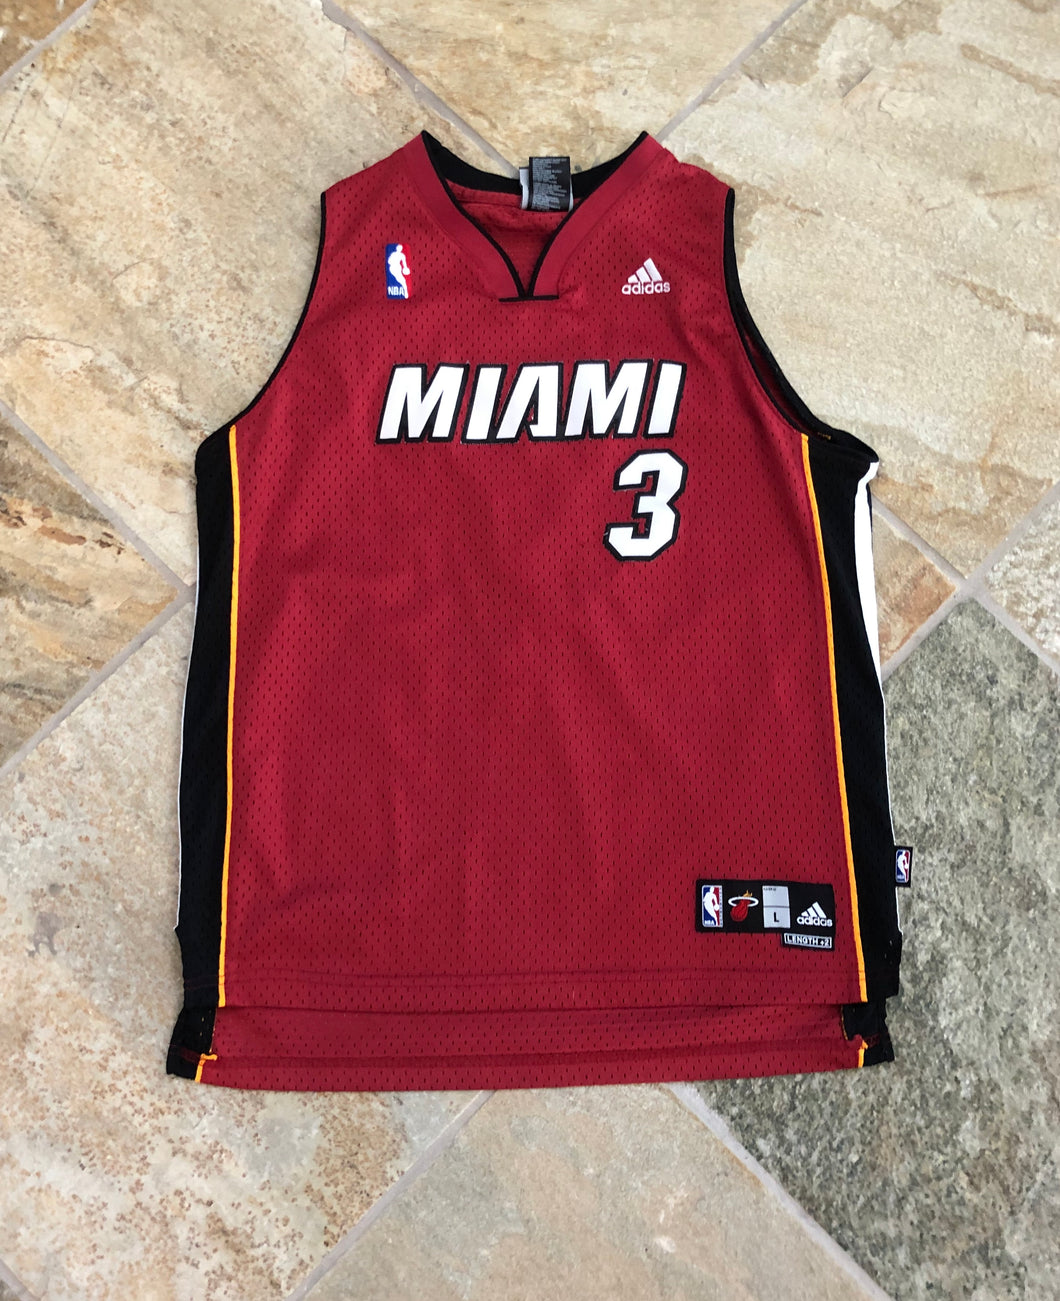 Miami Heat Dwayne Wade Adidas Youth Basketball Jersey, Size Large 14-16